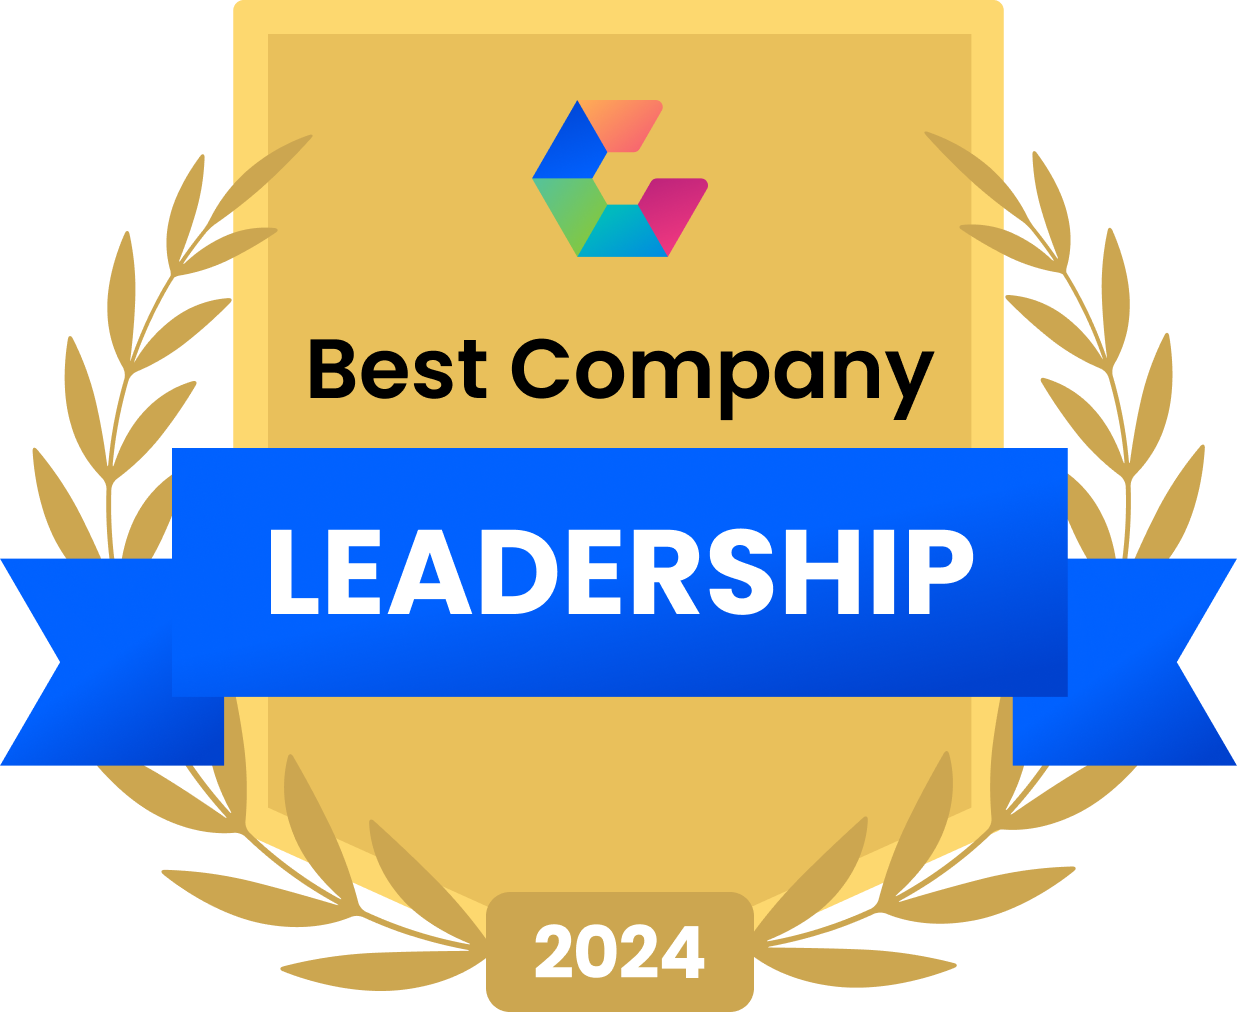 Best Leadership Teams 2022 Image